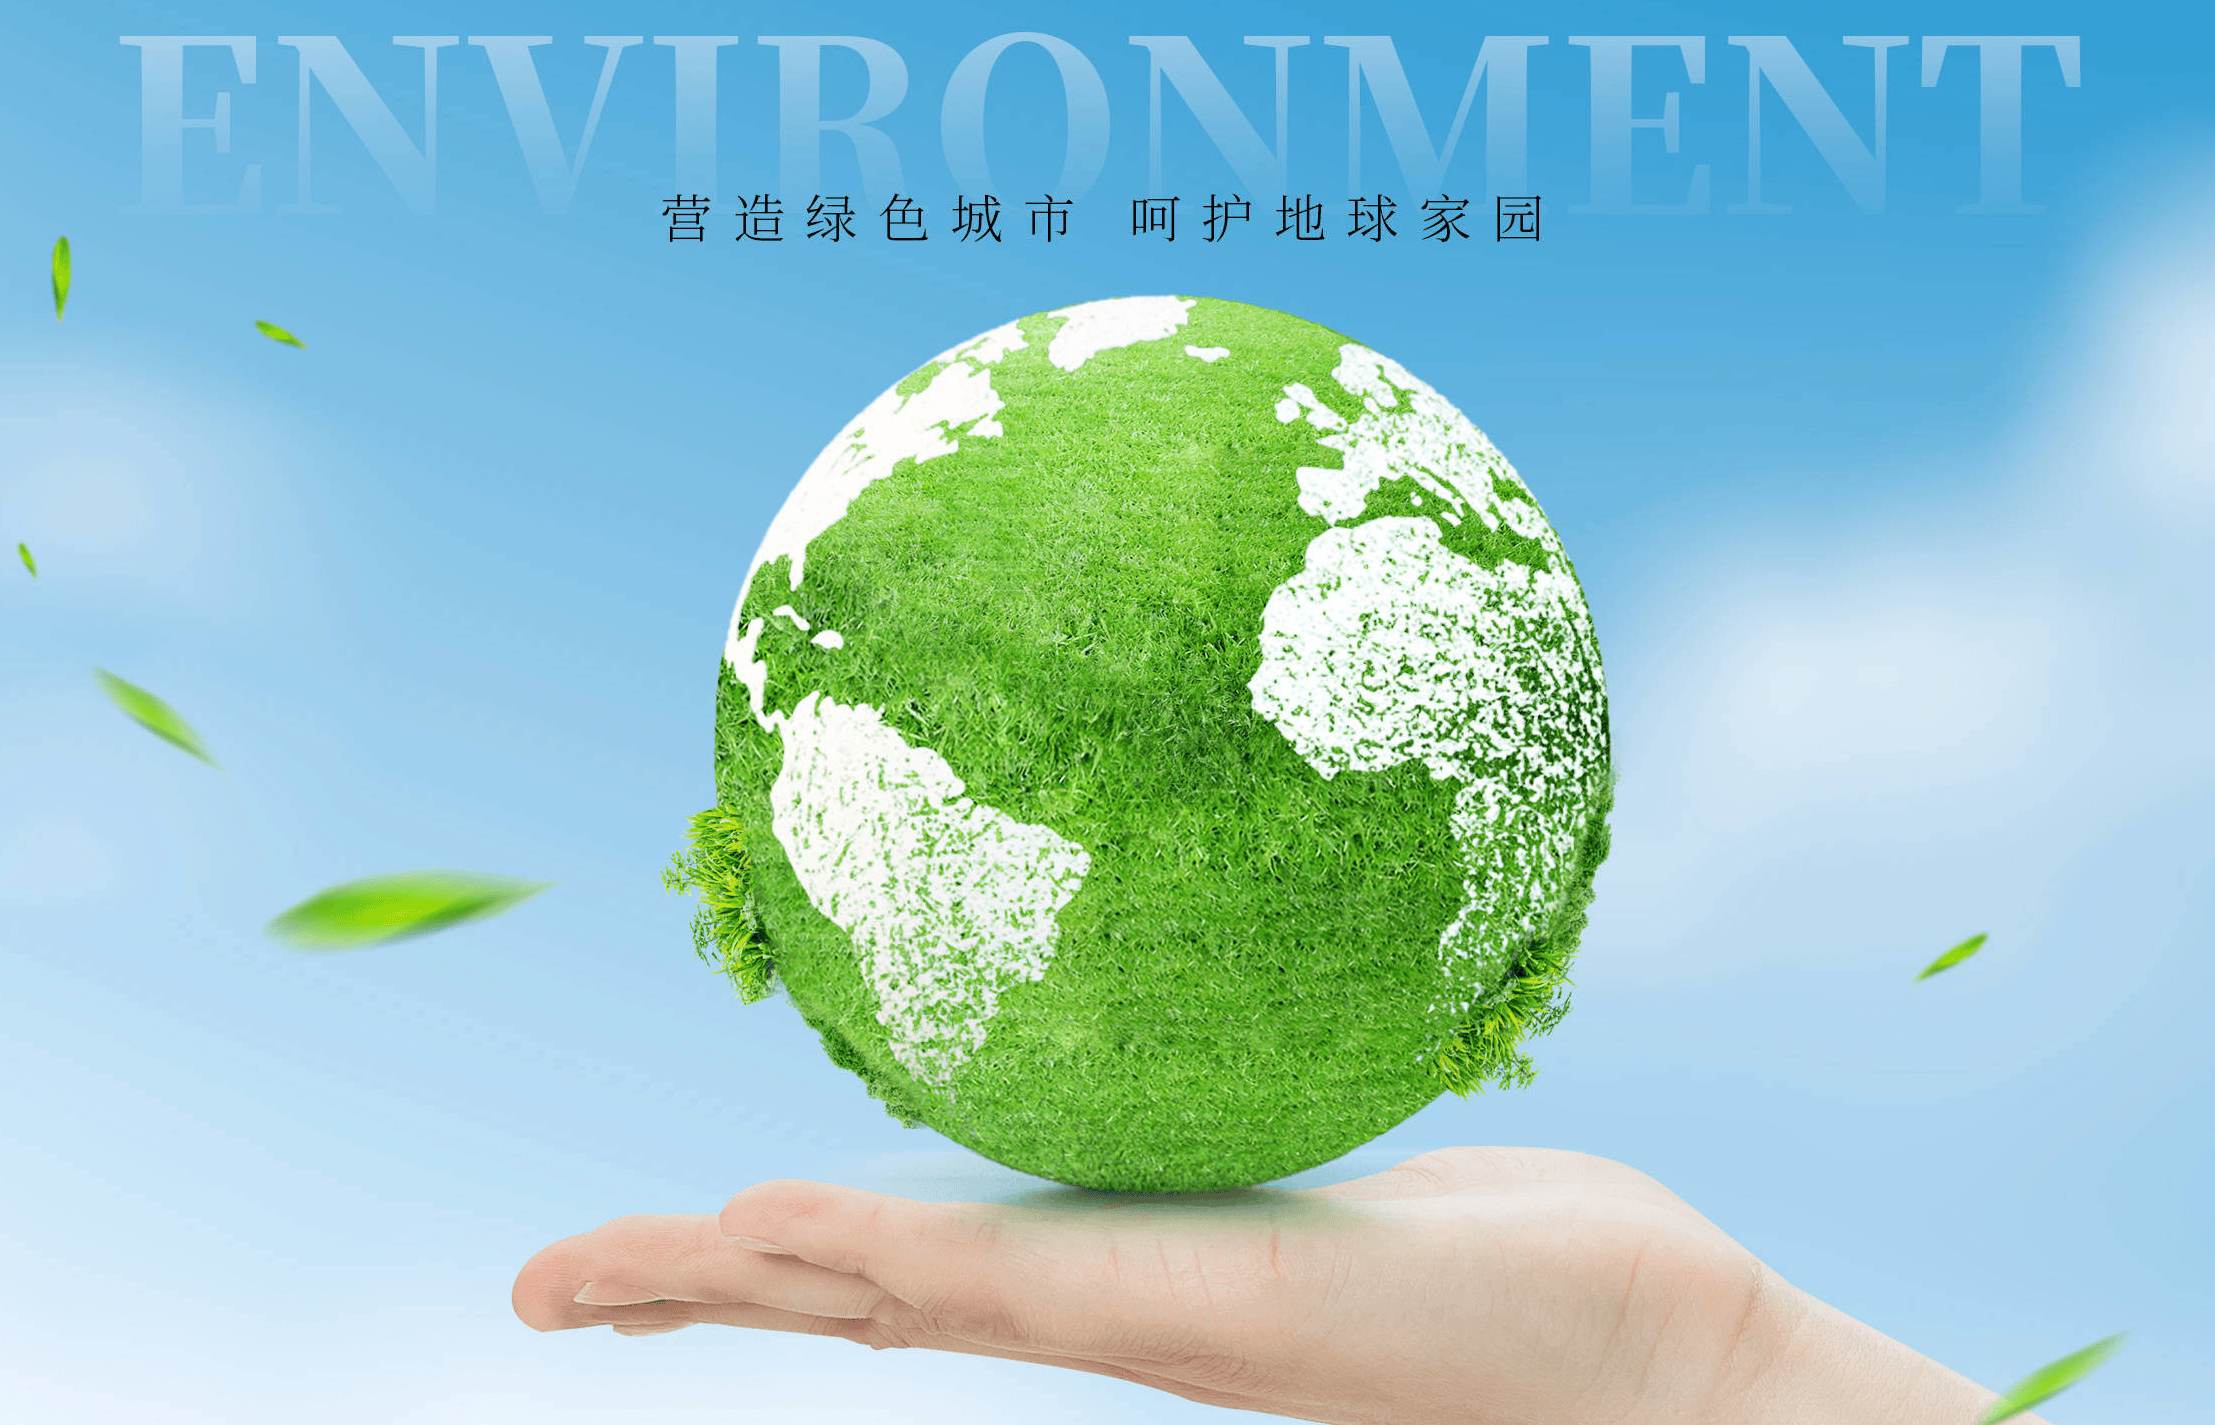 微生物的力量:贝森姆在世界环境日的绿色承诺